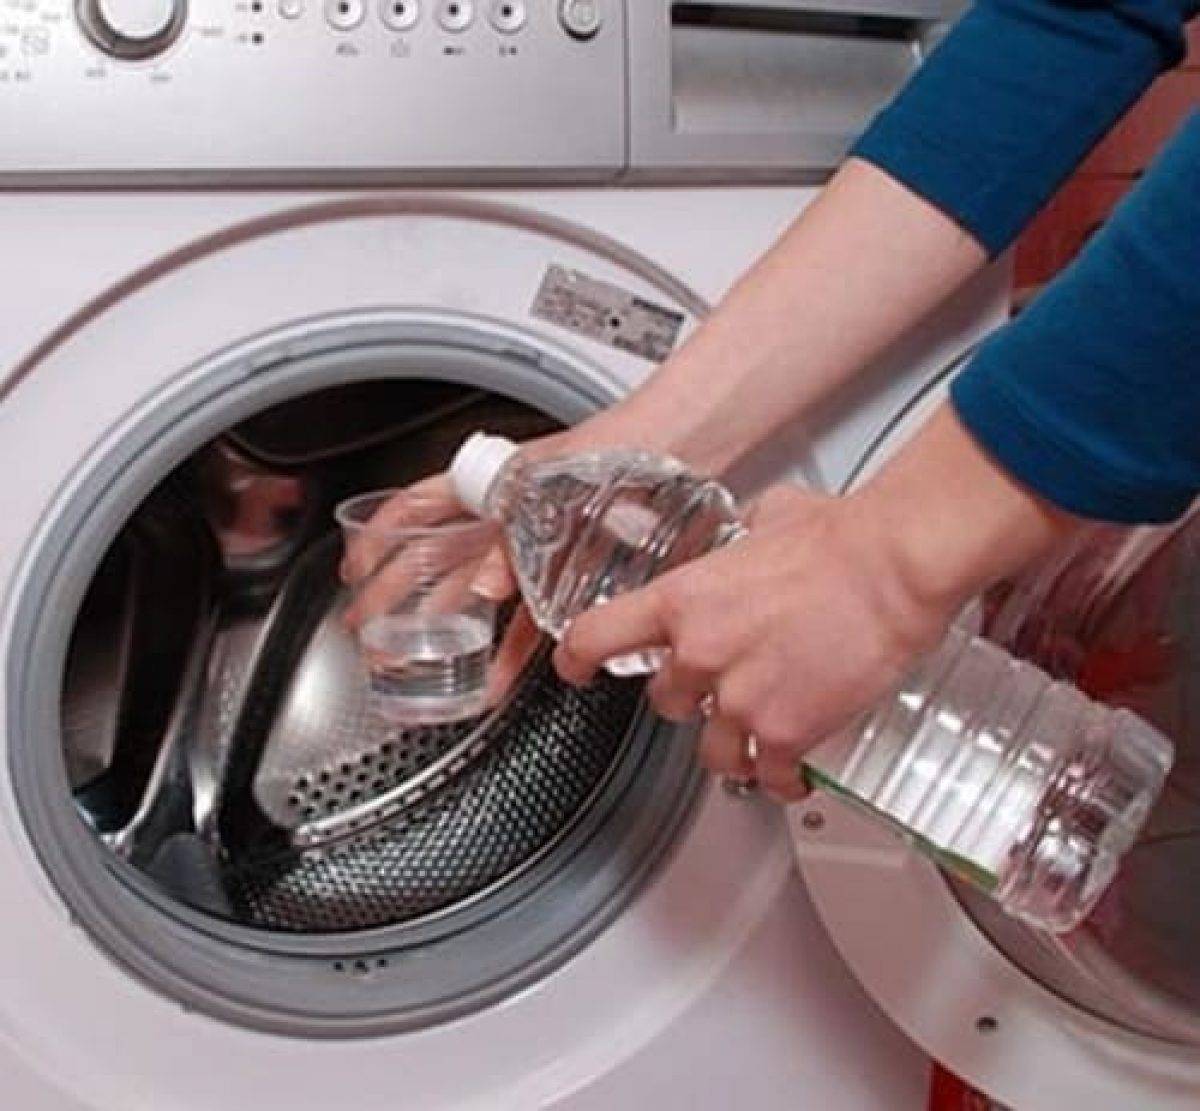 Как почистить лоток в стиральной машине: рекомендации и личный опыт